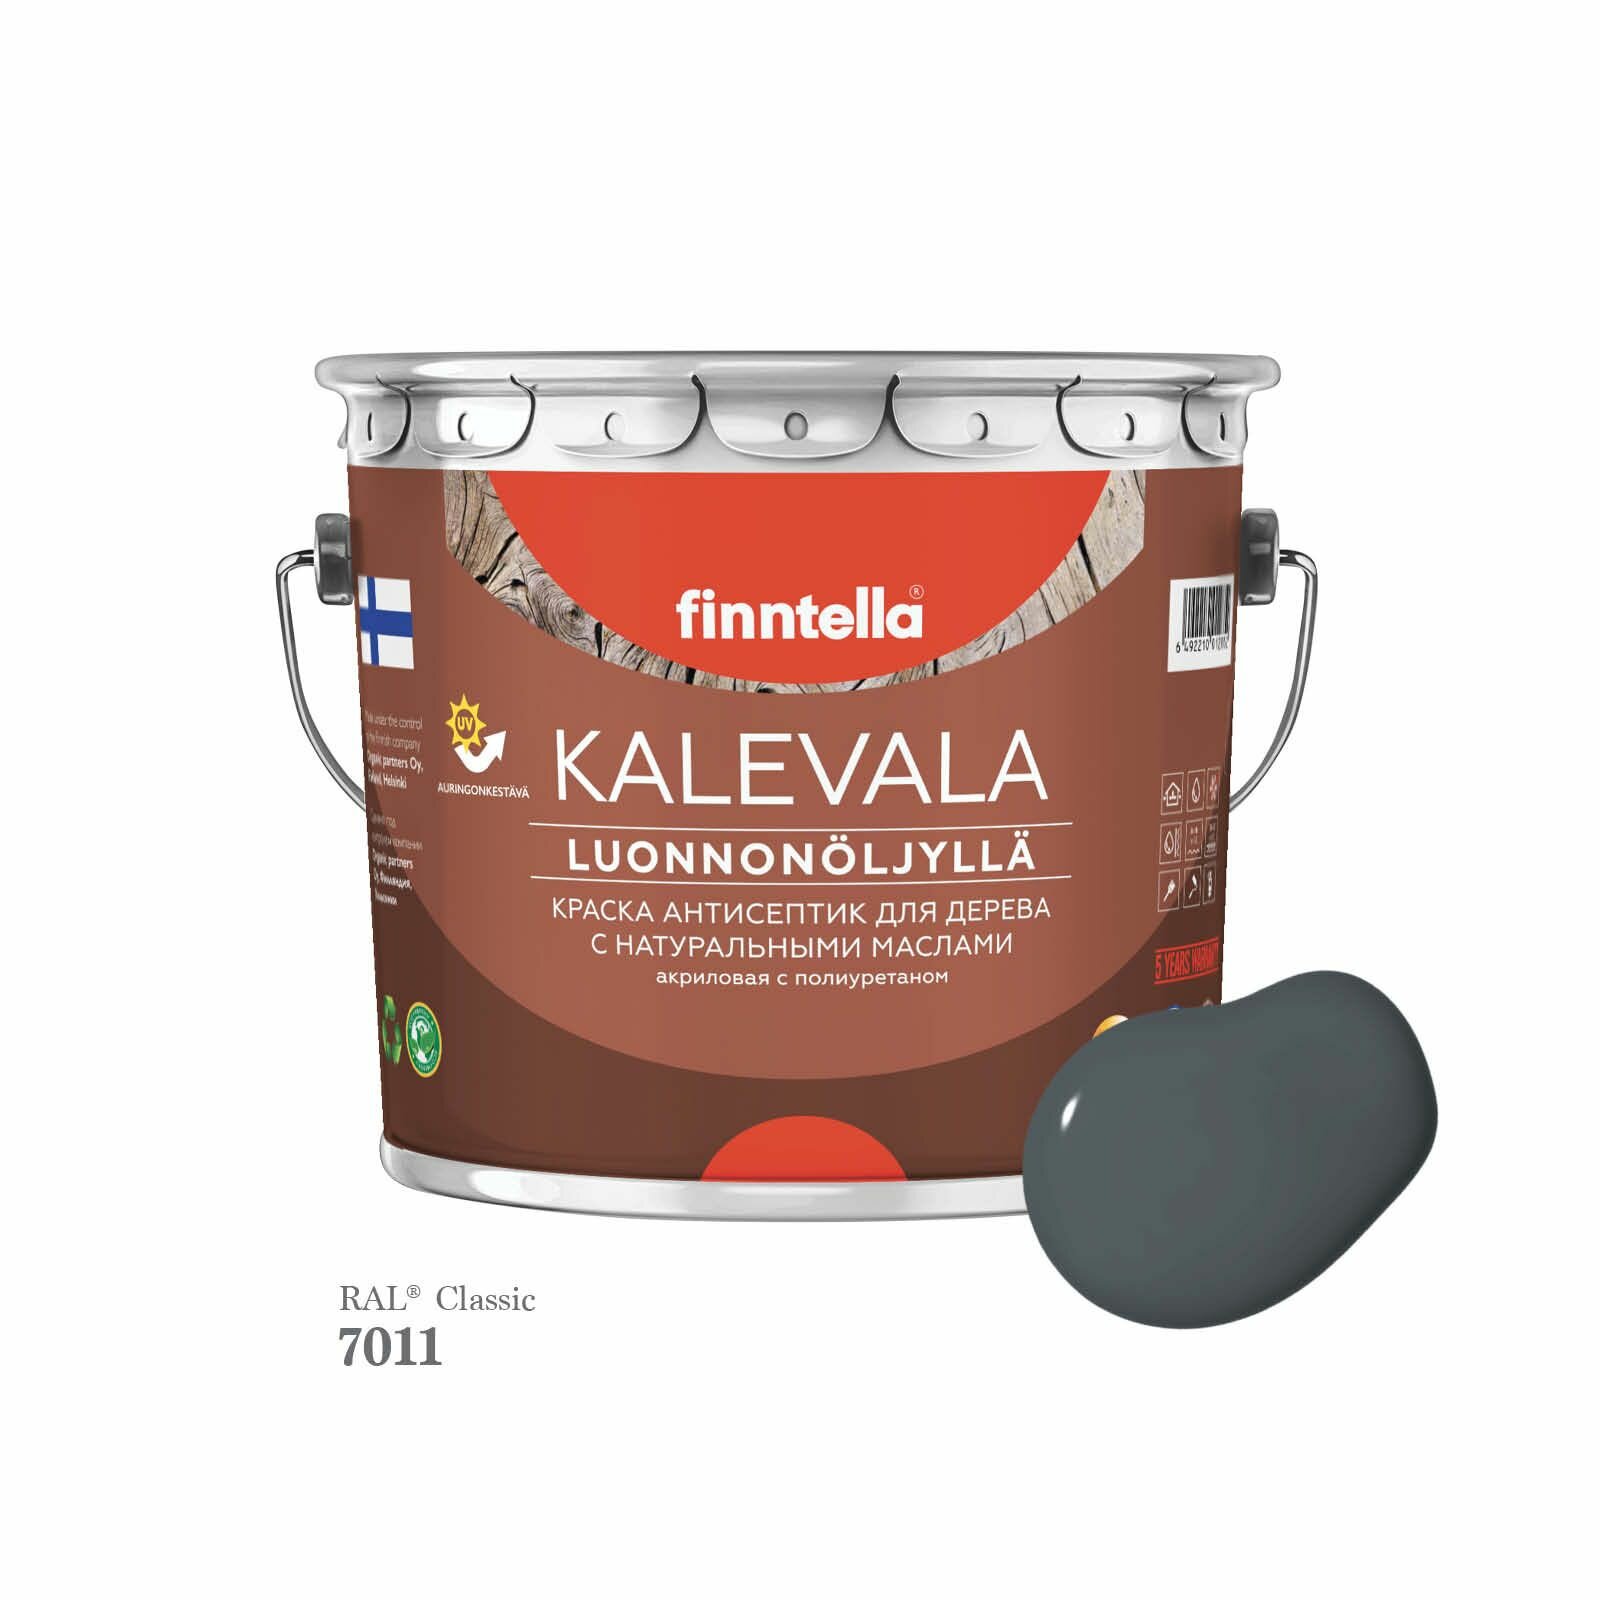 Краска для дерева и деревянных фасадов FINNTELLA KALEVALA, с натуральным маслом и полиуретаном, цвет RAL 7011 Железно-серый (Iron grey), 2,7л